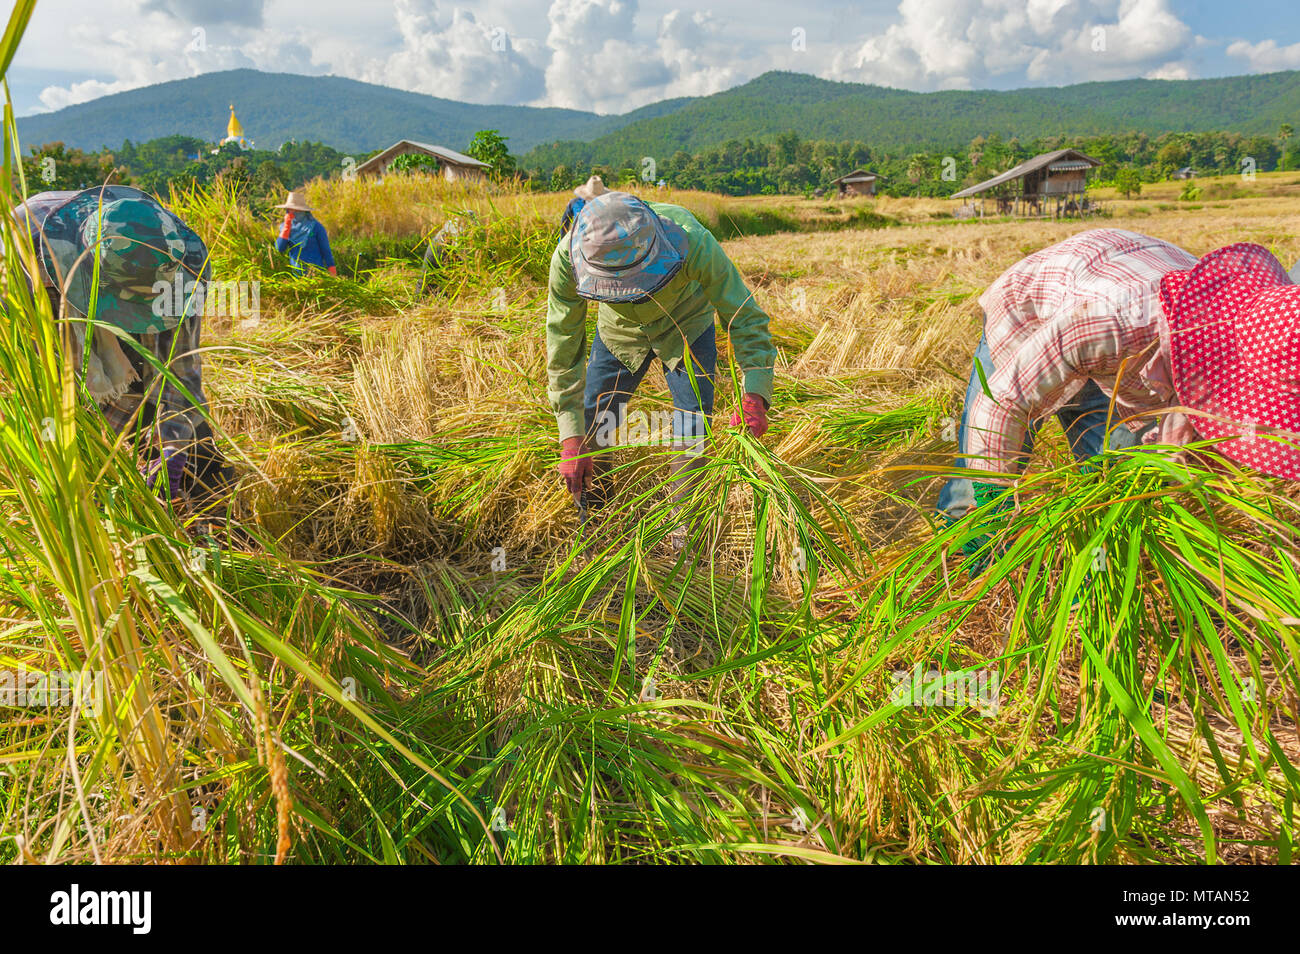 Ernte von Reis in Thailand. Während der Erntezeit, würden die Landwirte ernten ihren Reis mit scharfen Sicheln Reis Stengel zu schneiden. Stockfoto